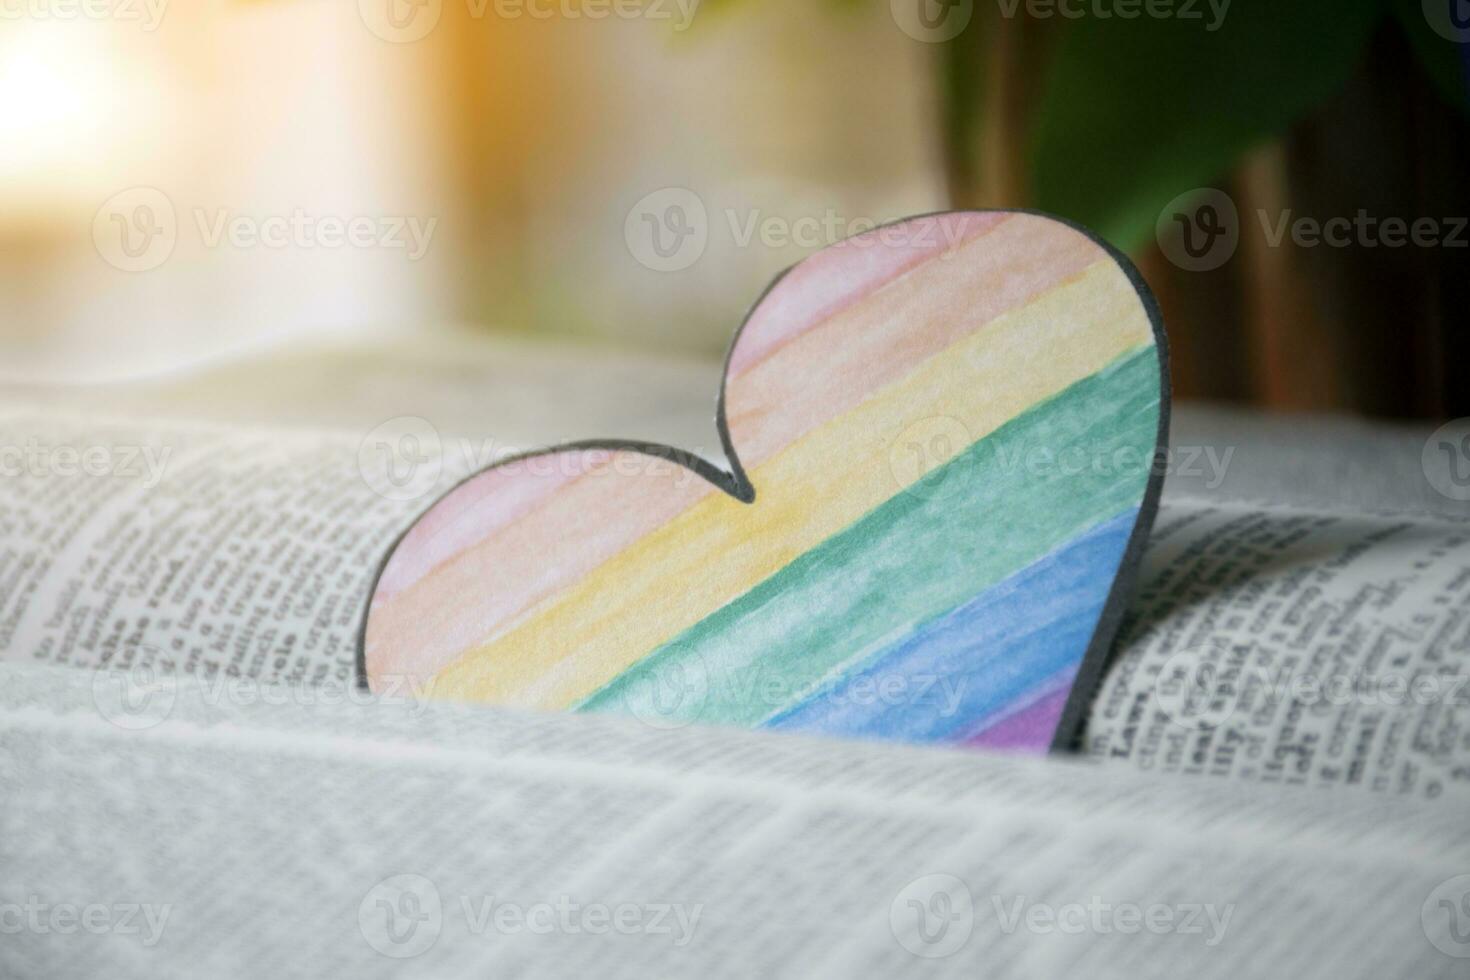 närbild se av bokmärke i hjärta form som ritade med regnbåge färger, suddig öppnad gammal bok bakgrund, begrepp för kallelse ut Allt människor till respekt kön mångfald av människor i stolthet månad. foto